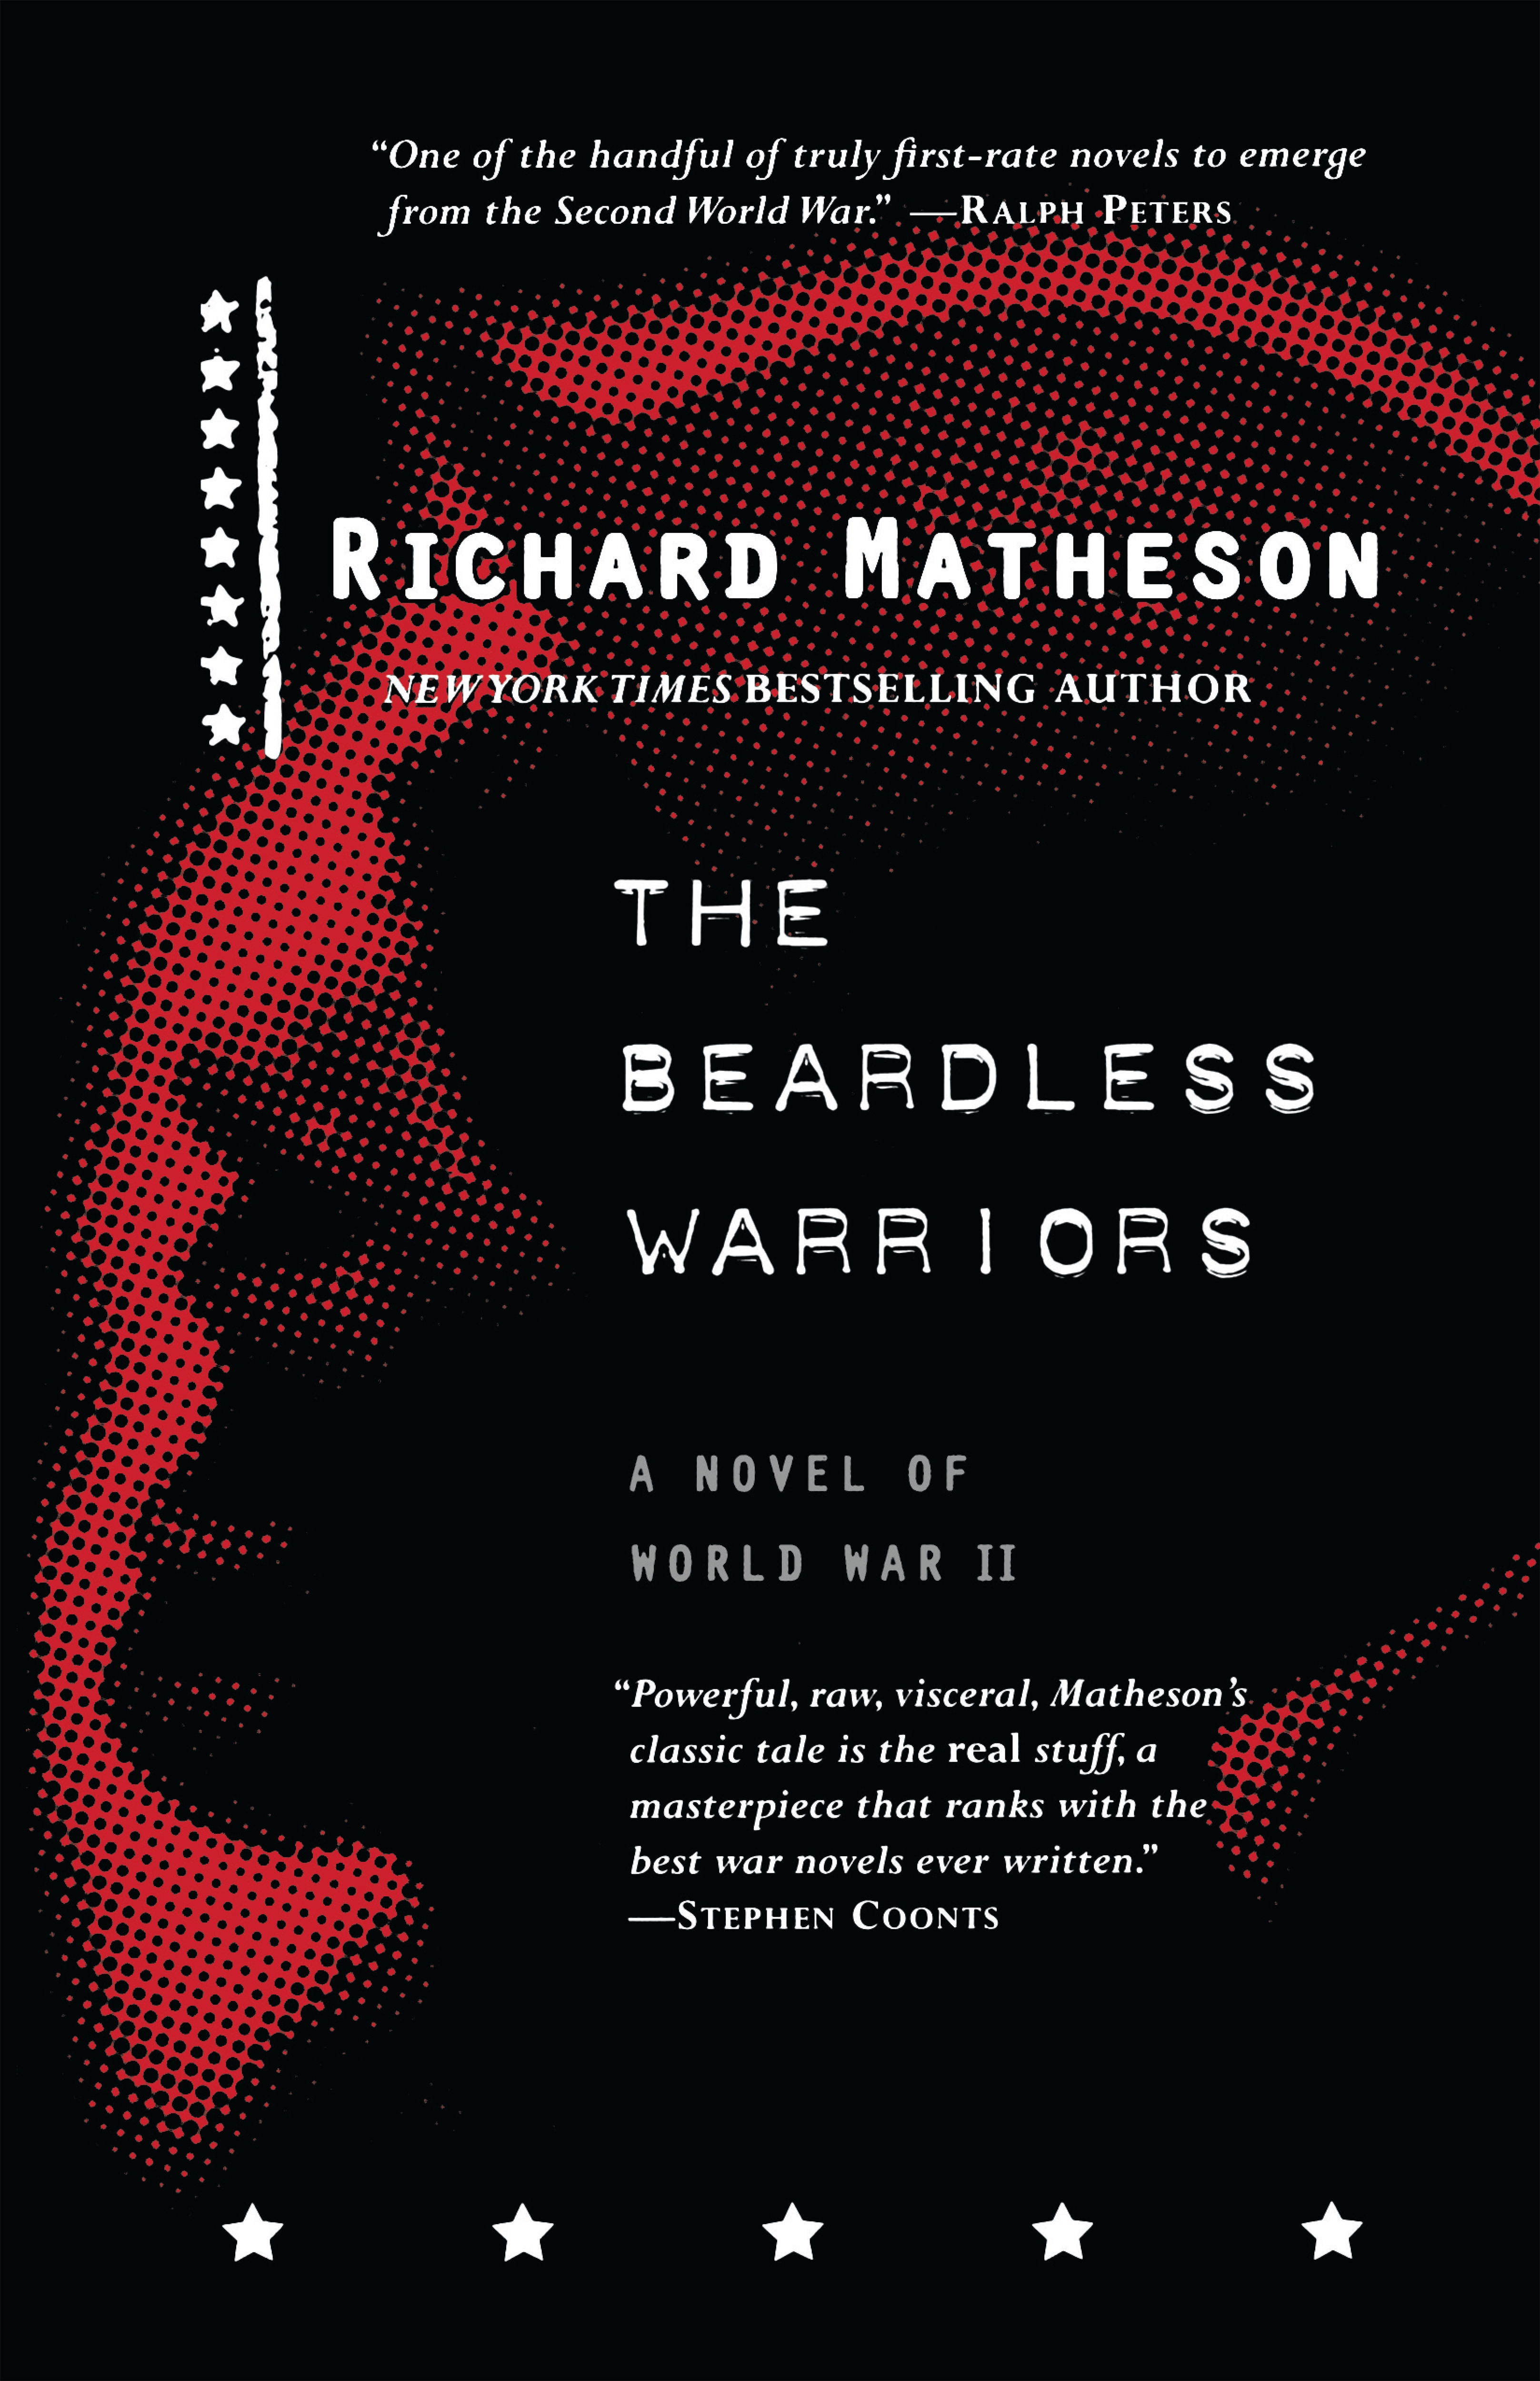 The Beardless Warriors : A Novel of World War II by Richard Matheson